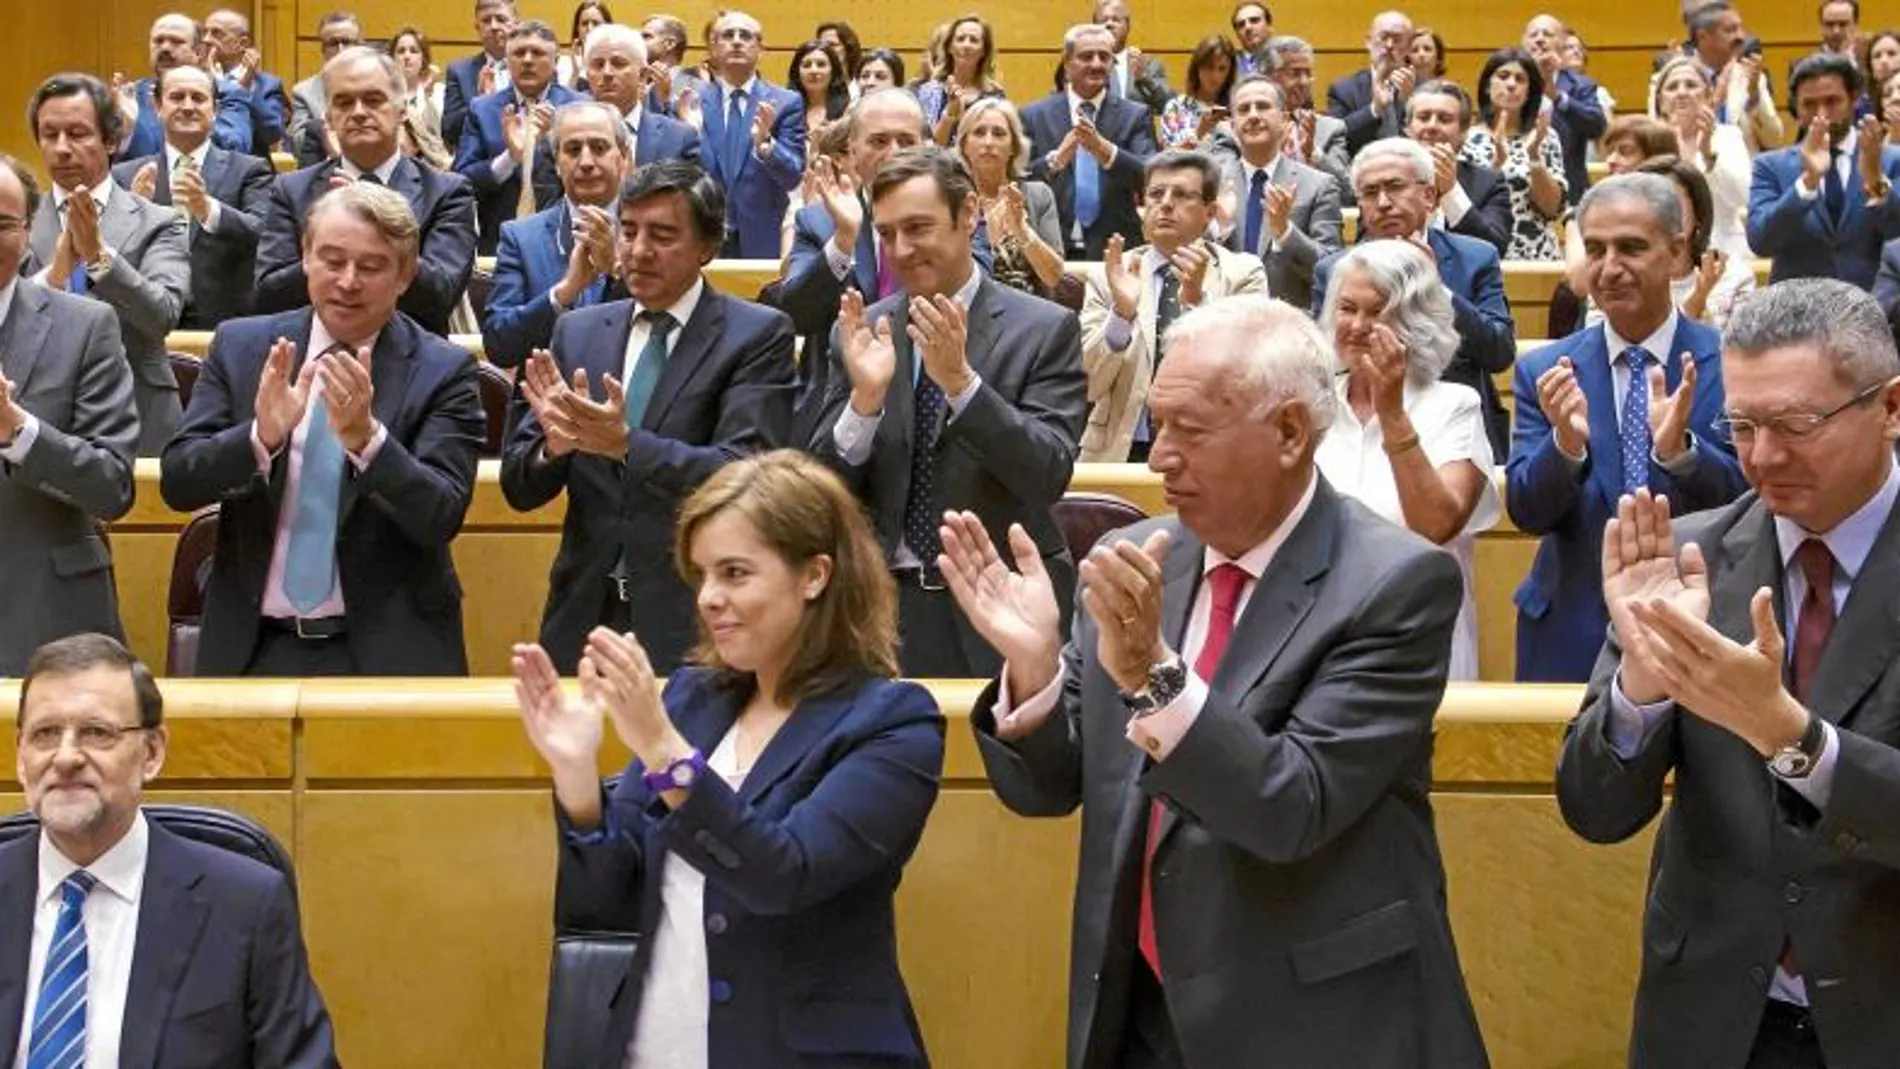 La bancada popular no paró de aplaudir durante toda la intervención de Rajoy